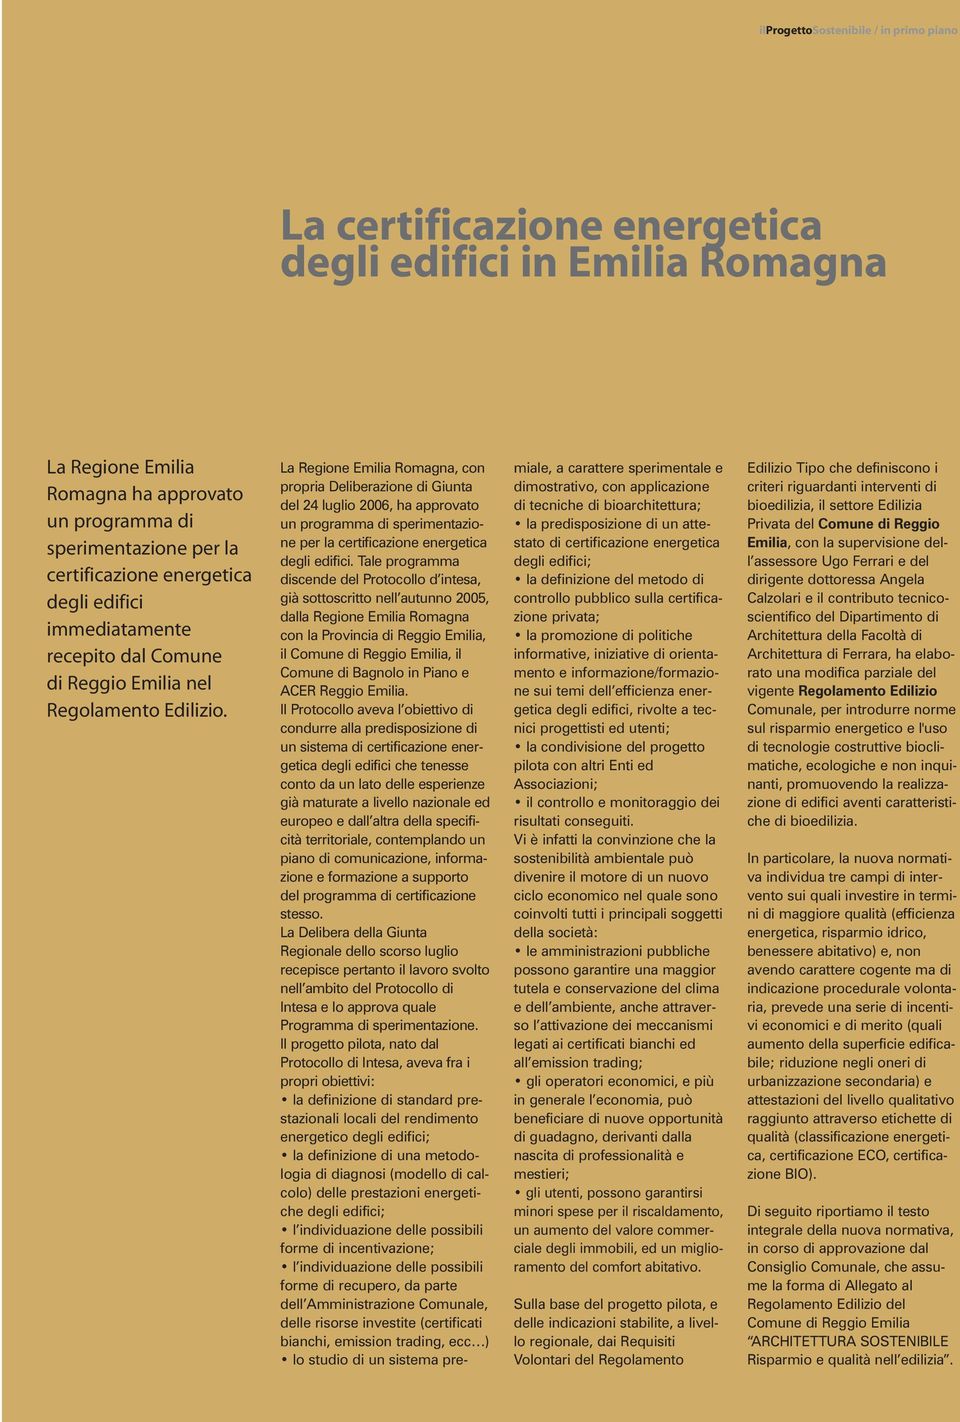 La Regione Emilia Romagna, con propria Deliberazione di Giunta del 24 luglio 2006, ha approvato un programma di sperimentazione per la certificazione energetica degli edifici.